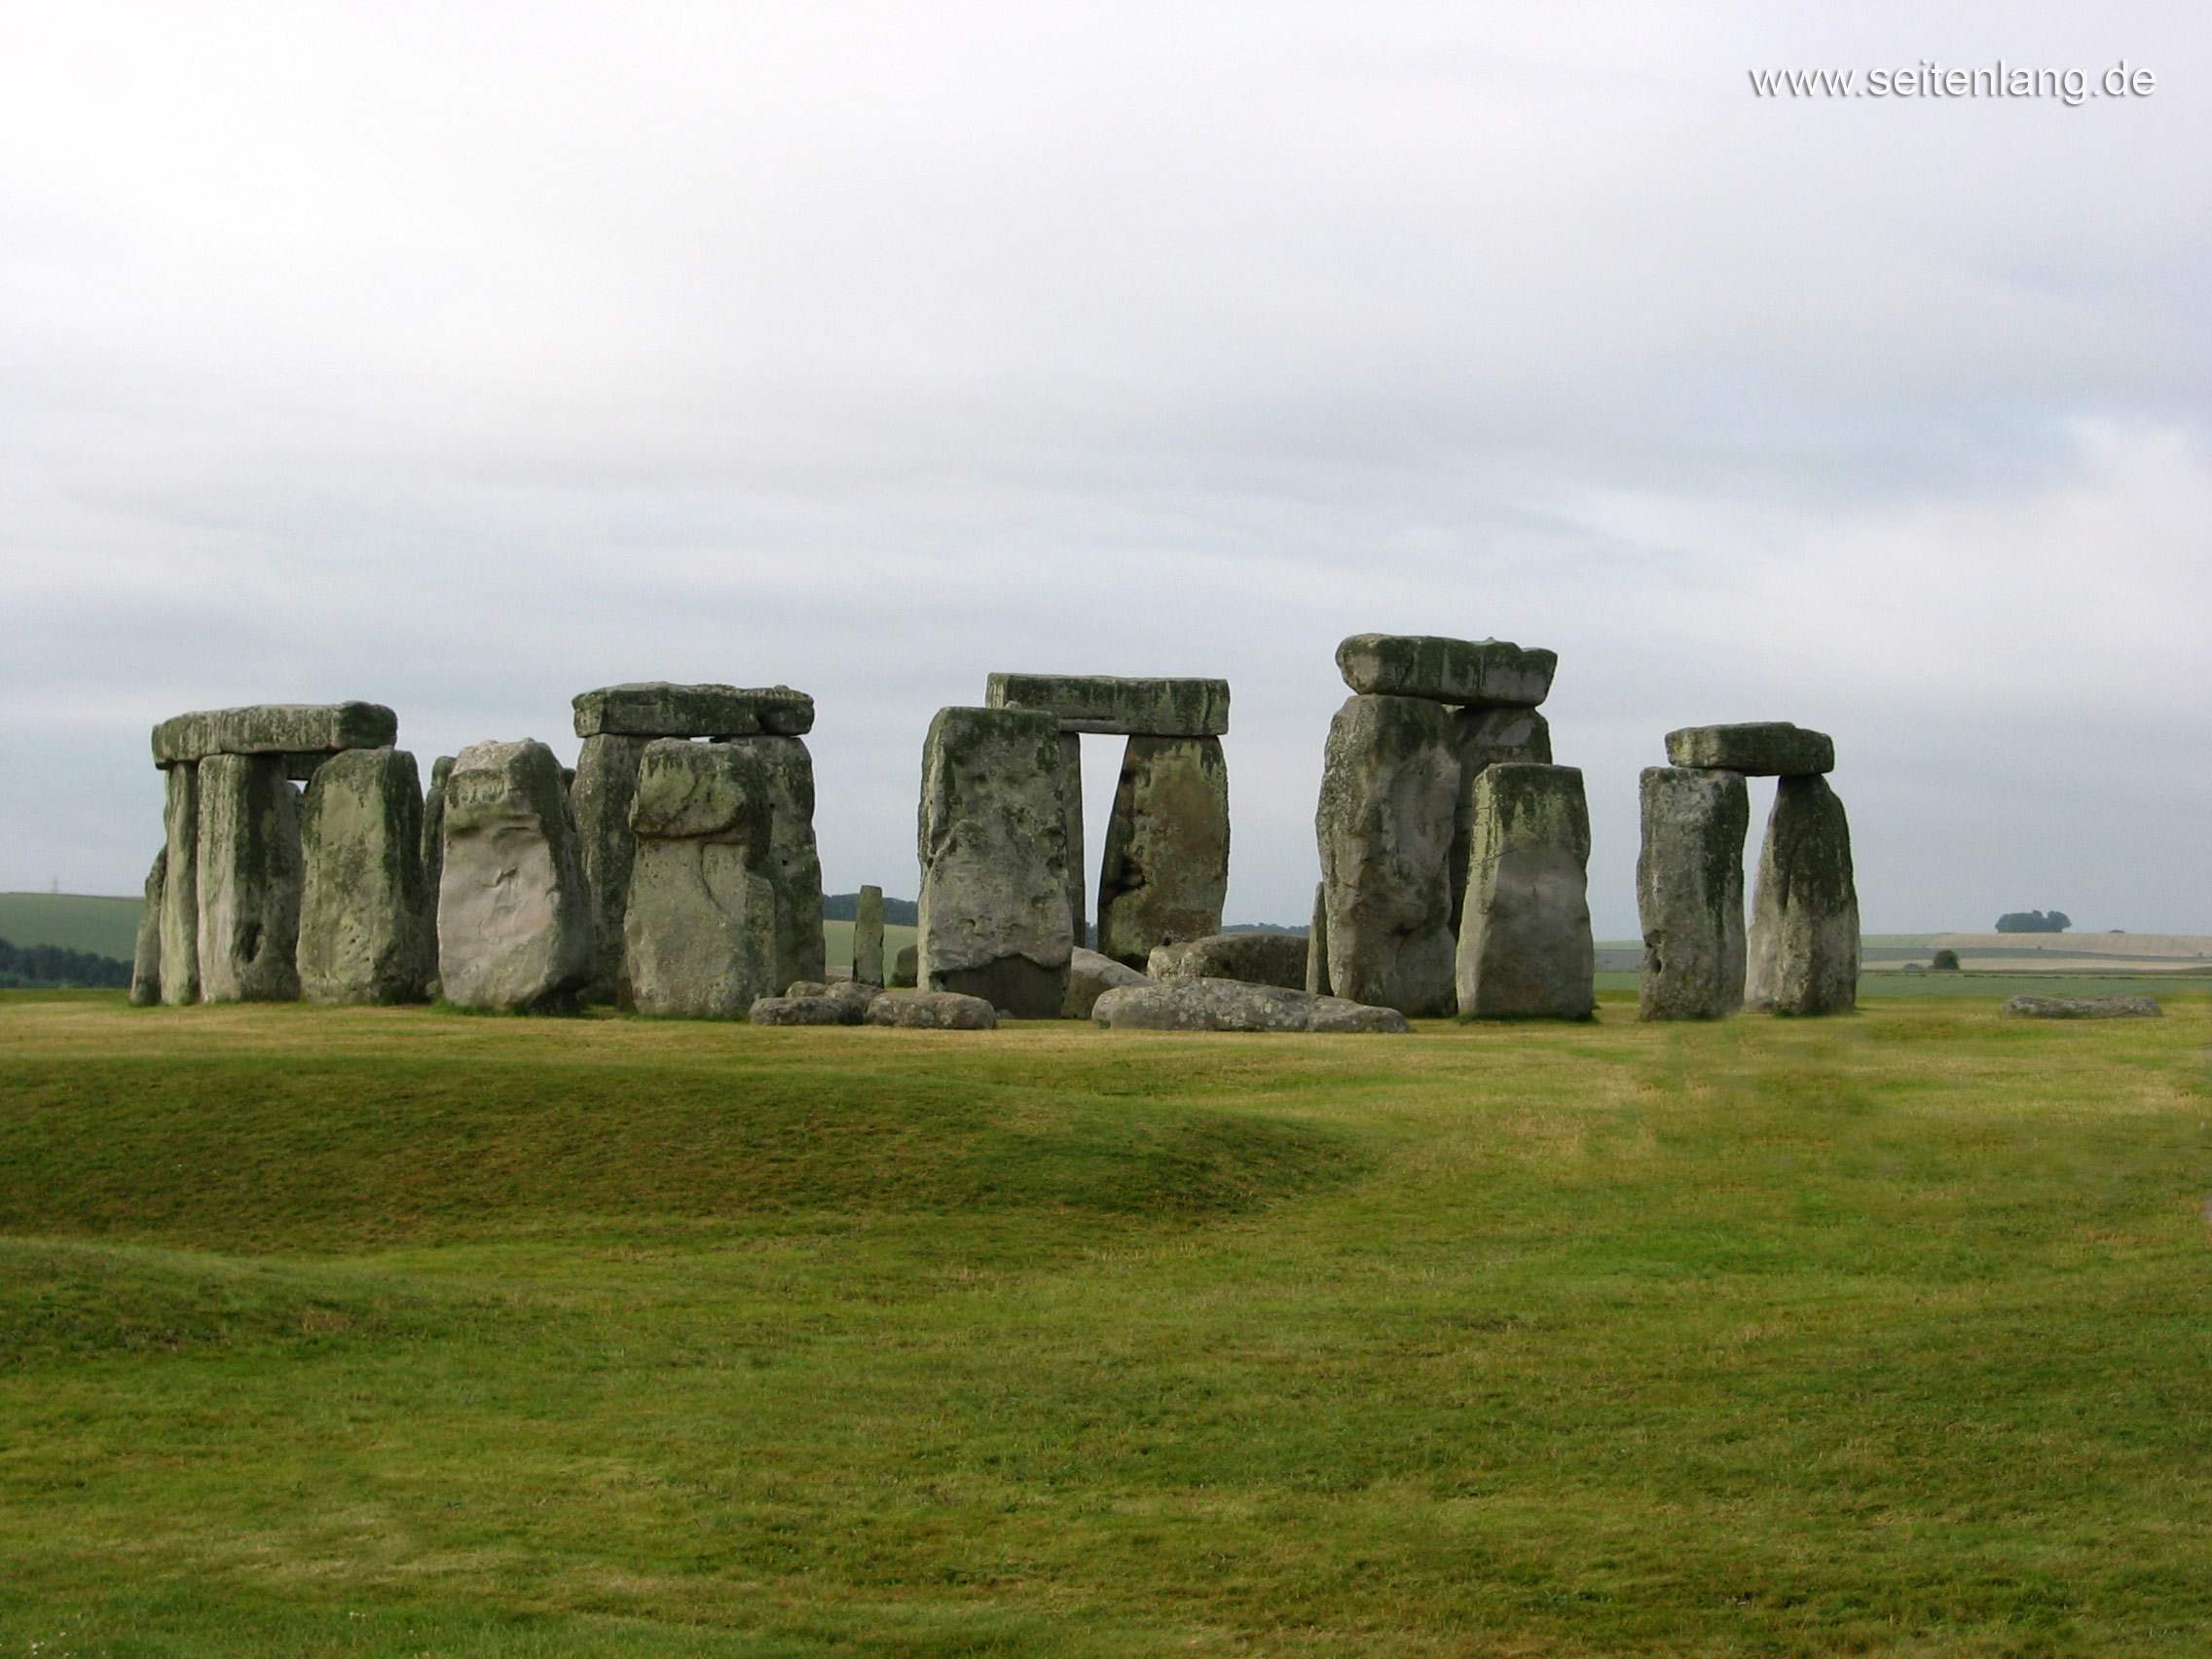 Desktopbild Wallpaper Kostenlos Und Gratis England Stonehenge